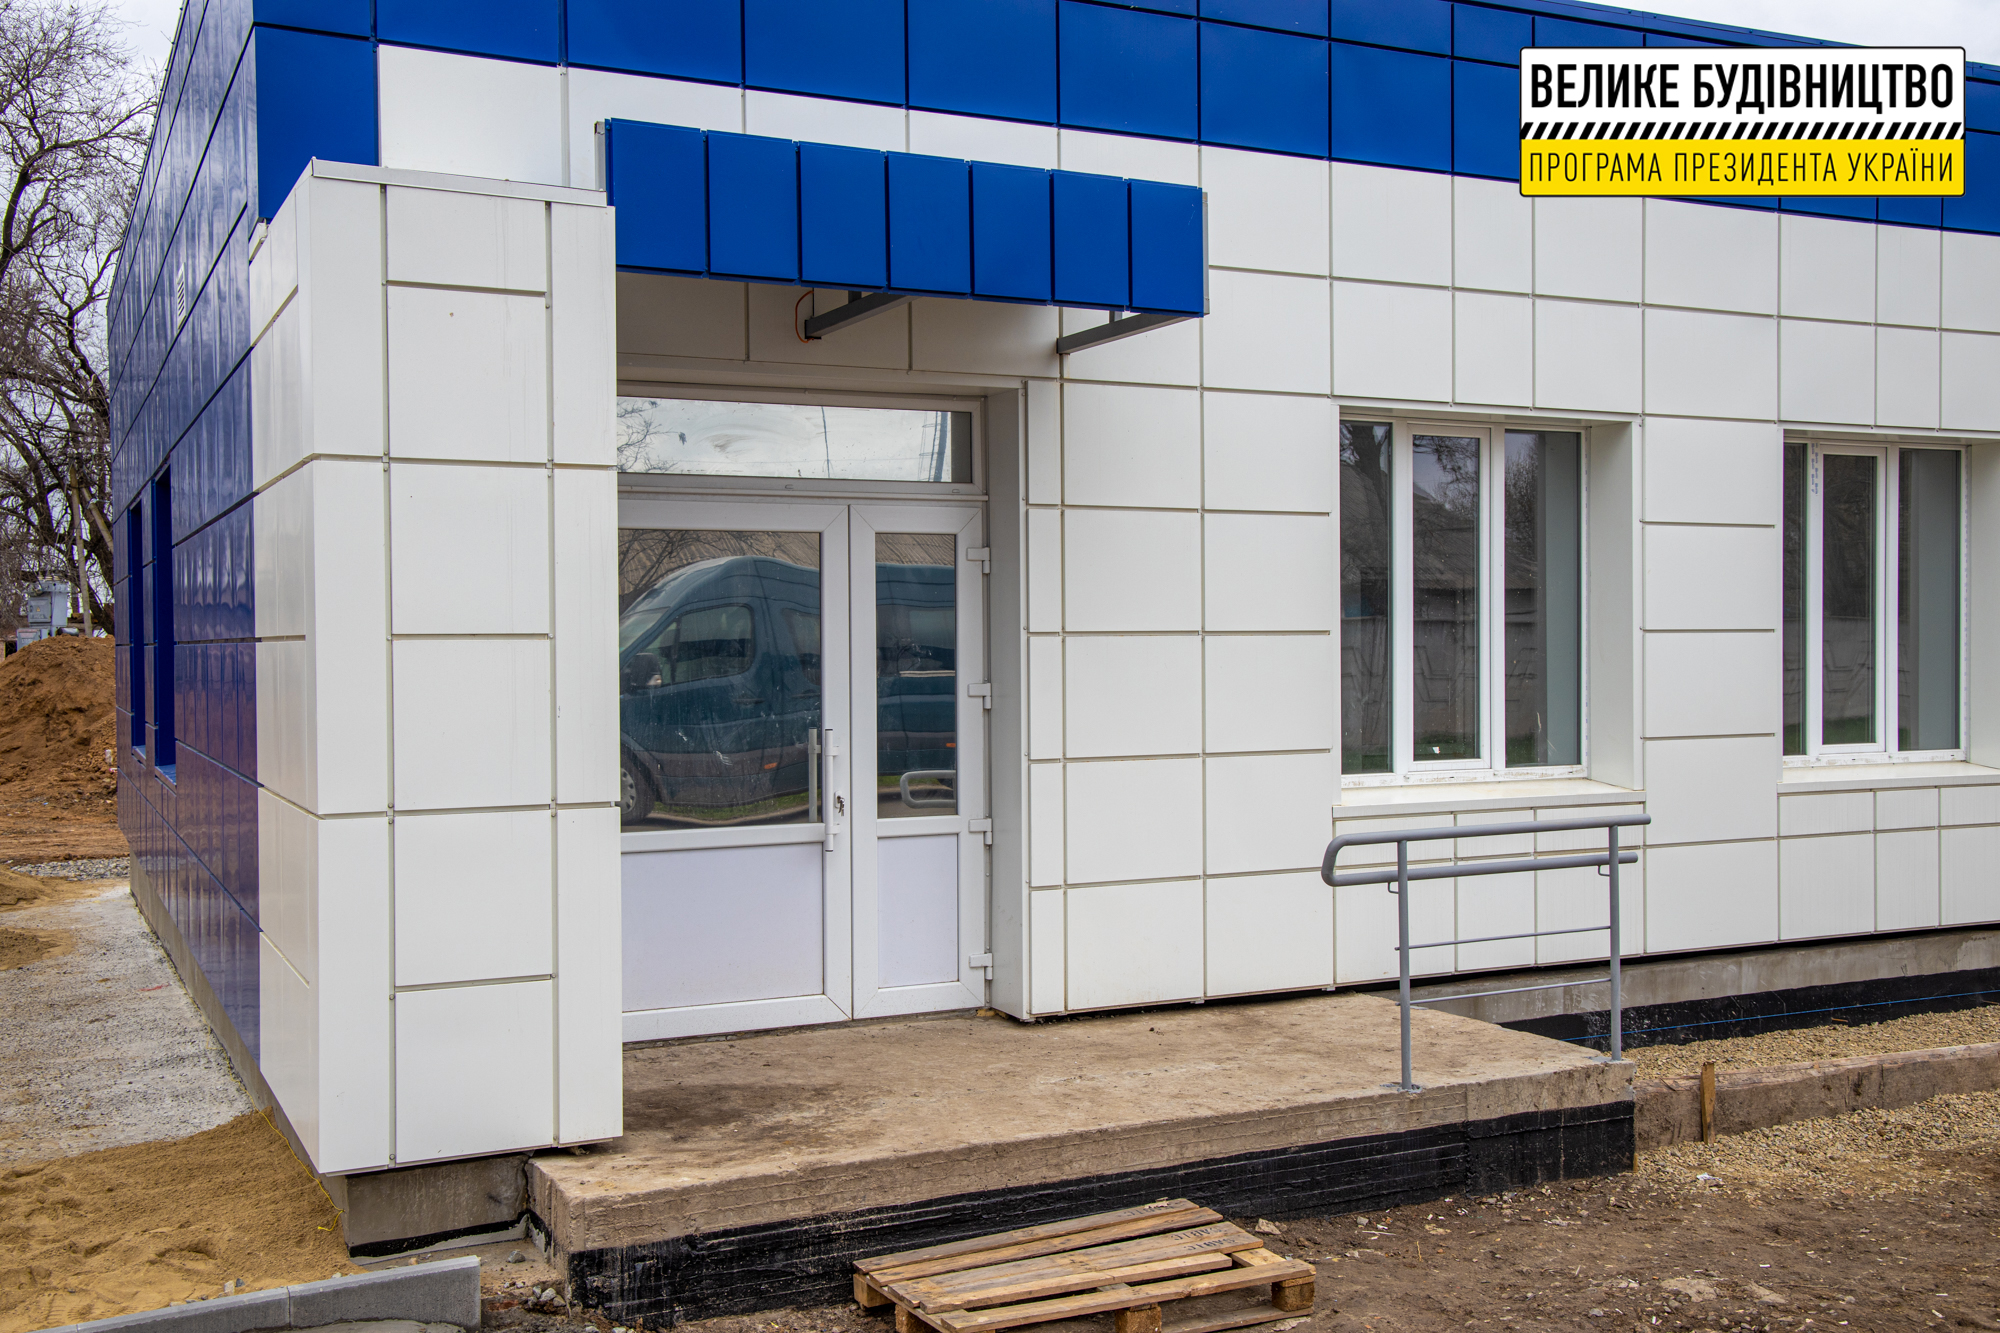 Нова амбулаторія обслуговуватиме 6,7 тис мешканців Девладівської громади